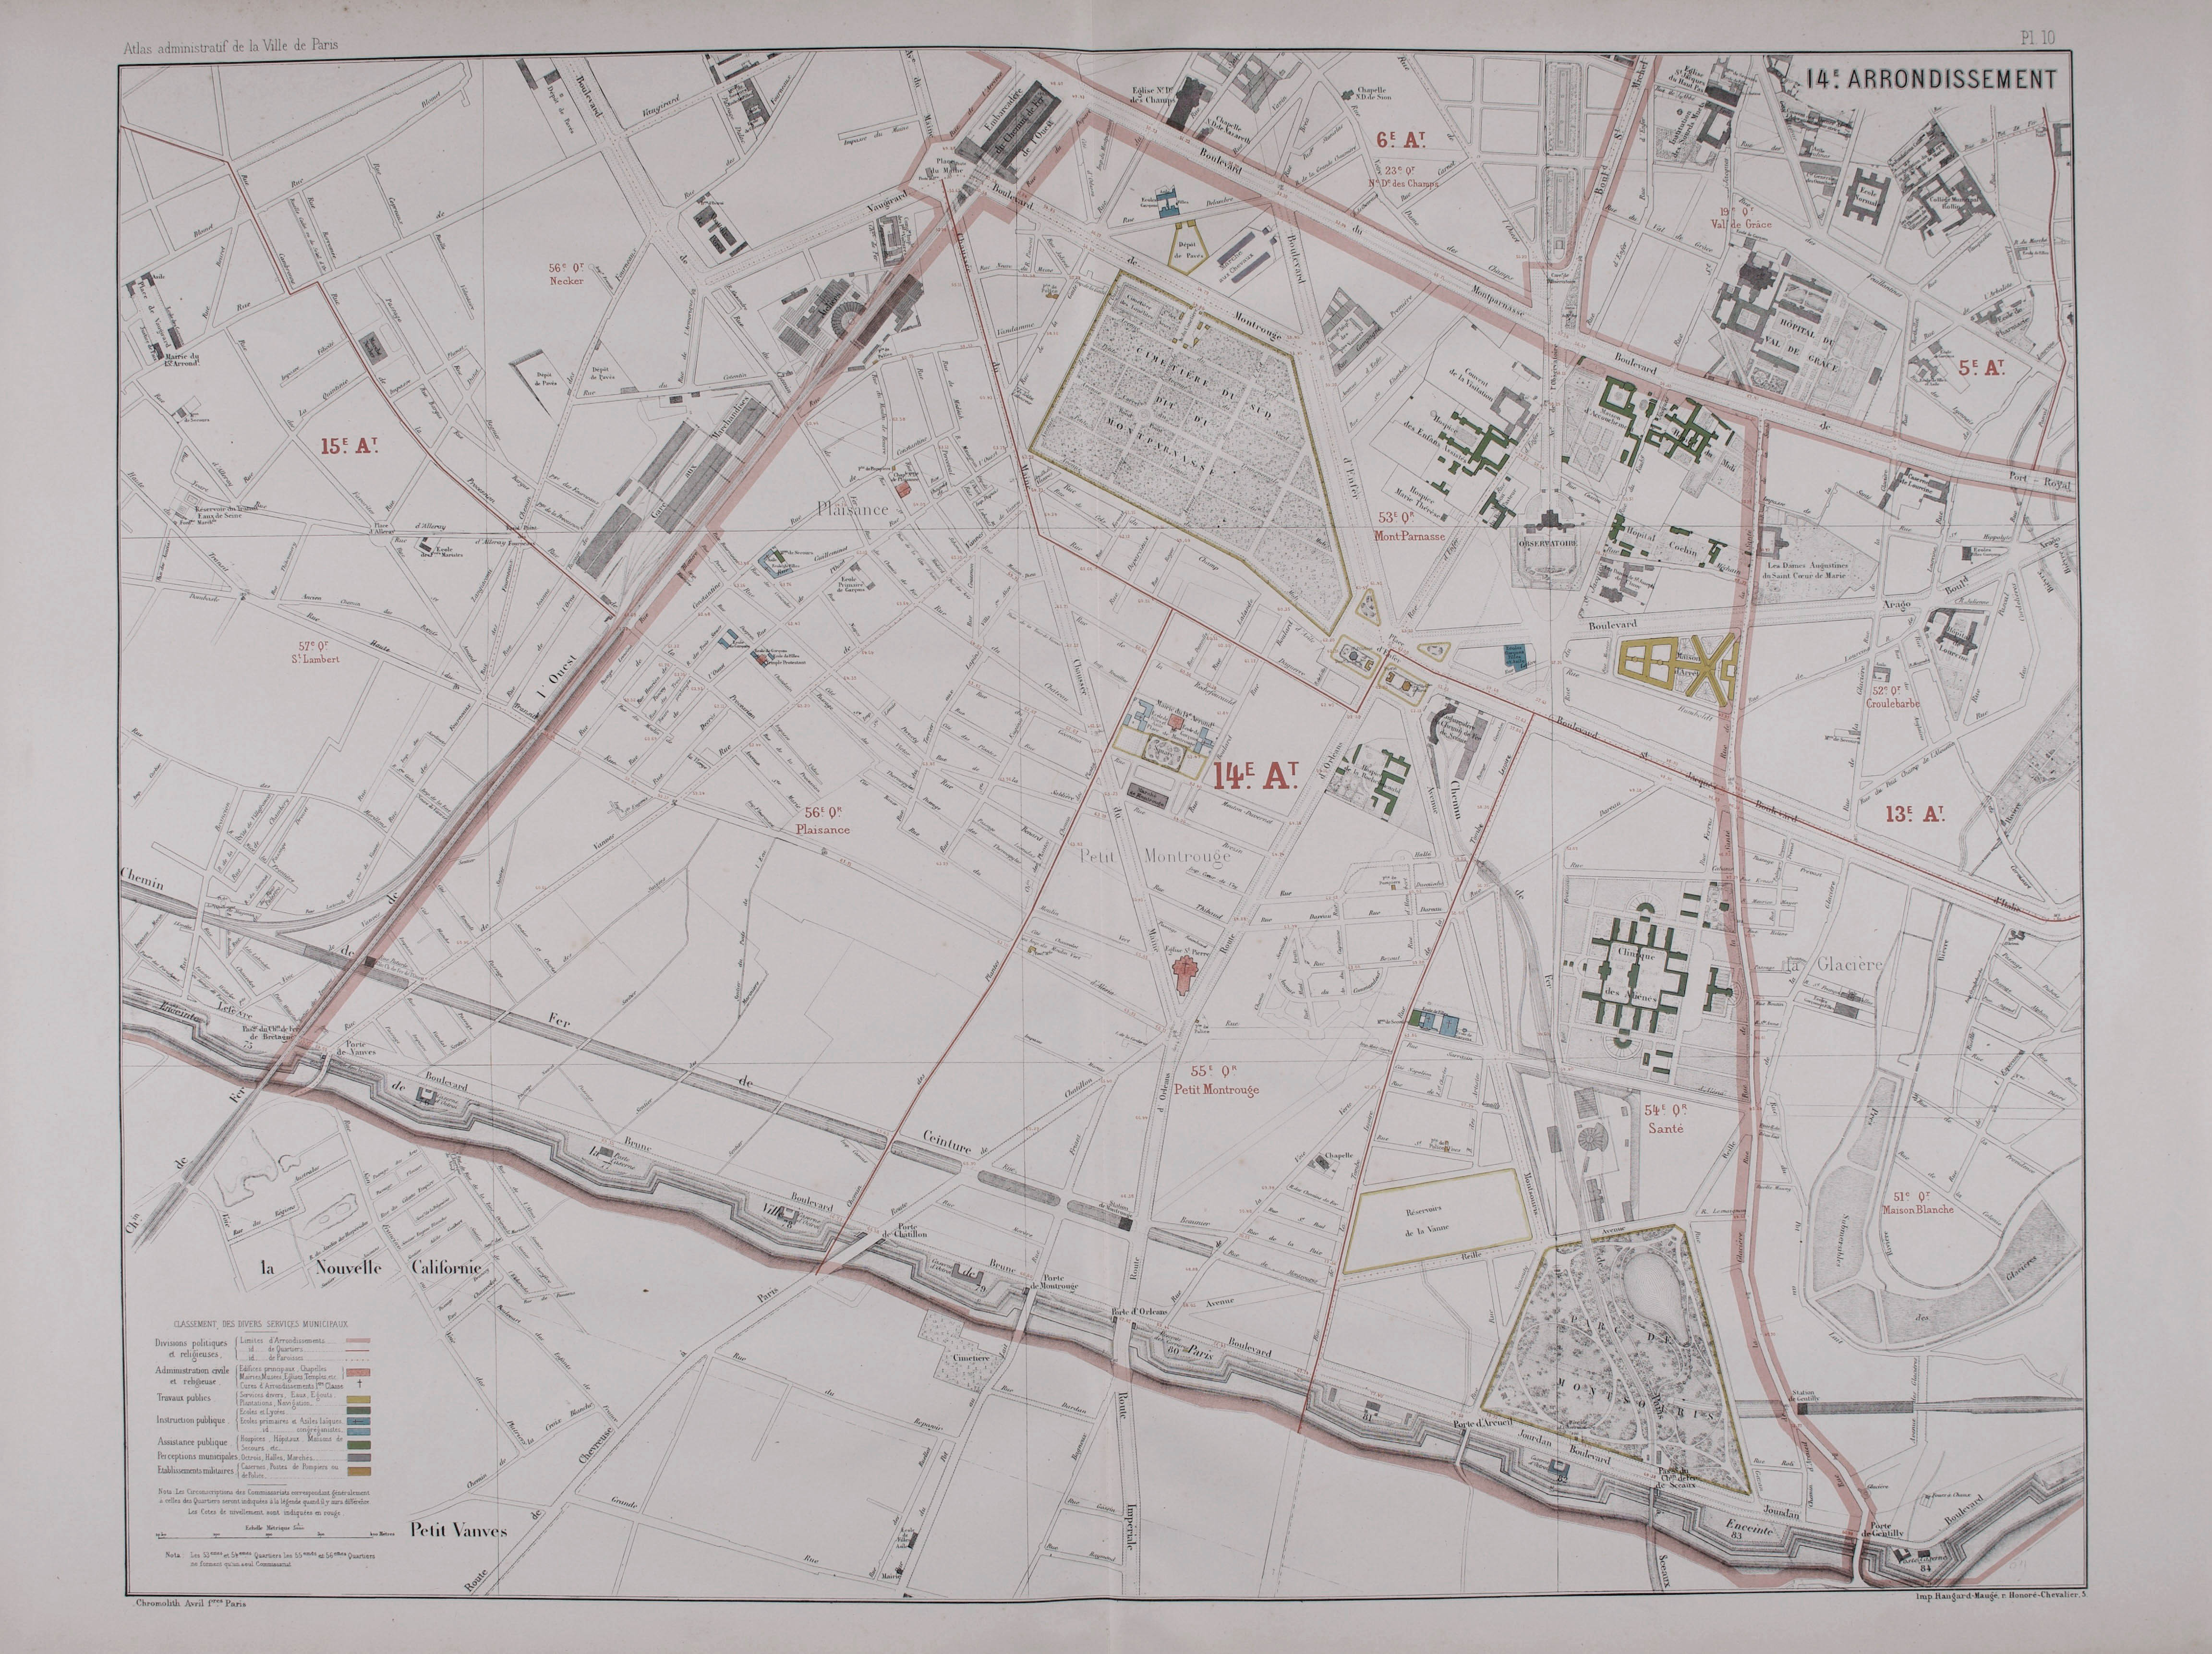 Plan du 14e arrondissement © Cité de l'architecture & du patrimoine/Musée des Monuments français